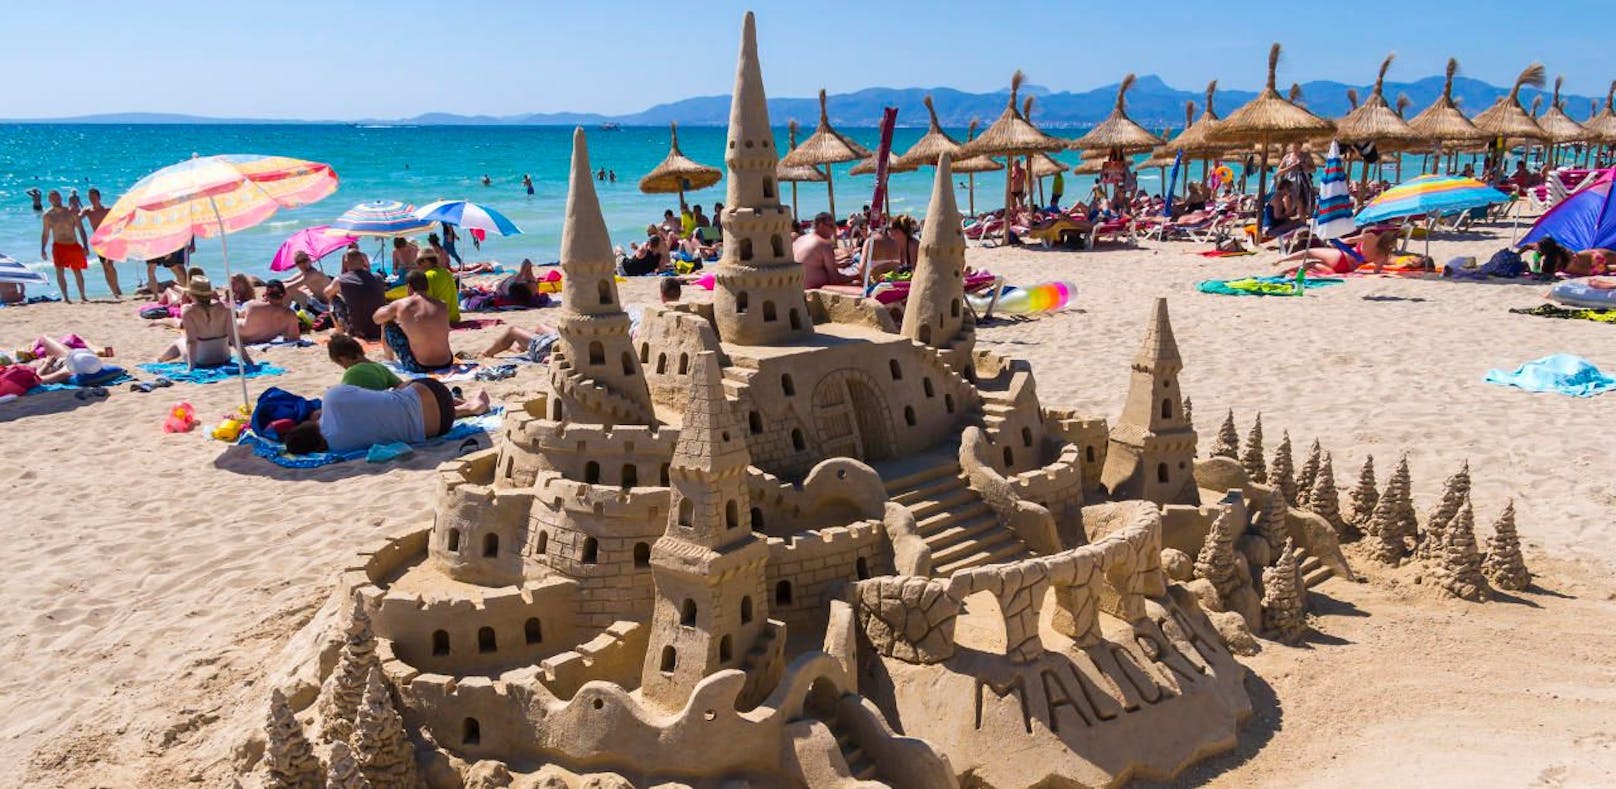 Solche Sandburgen bilden oftmals die Lebensgrundlage der Menschen in Mallorca.